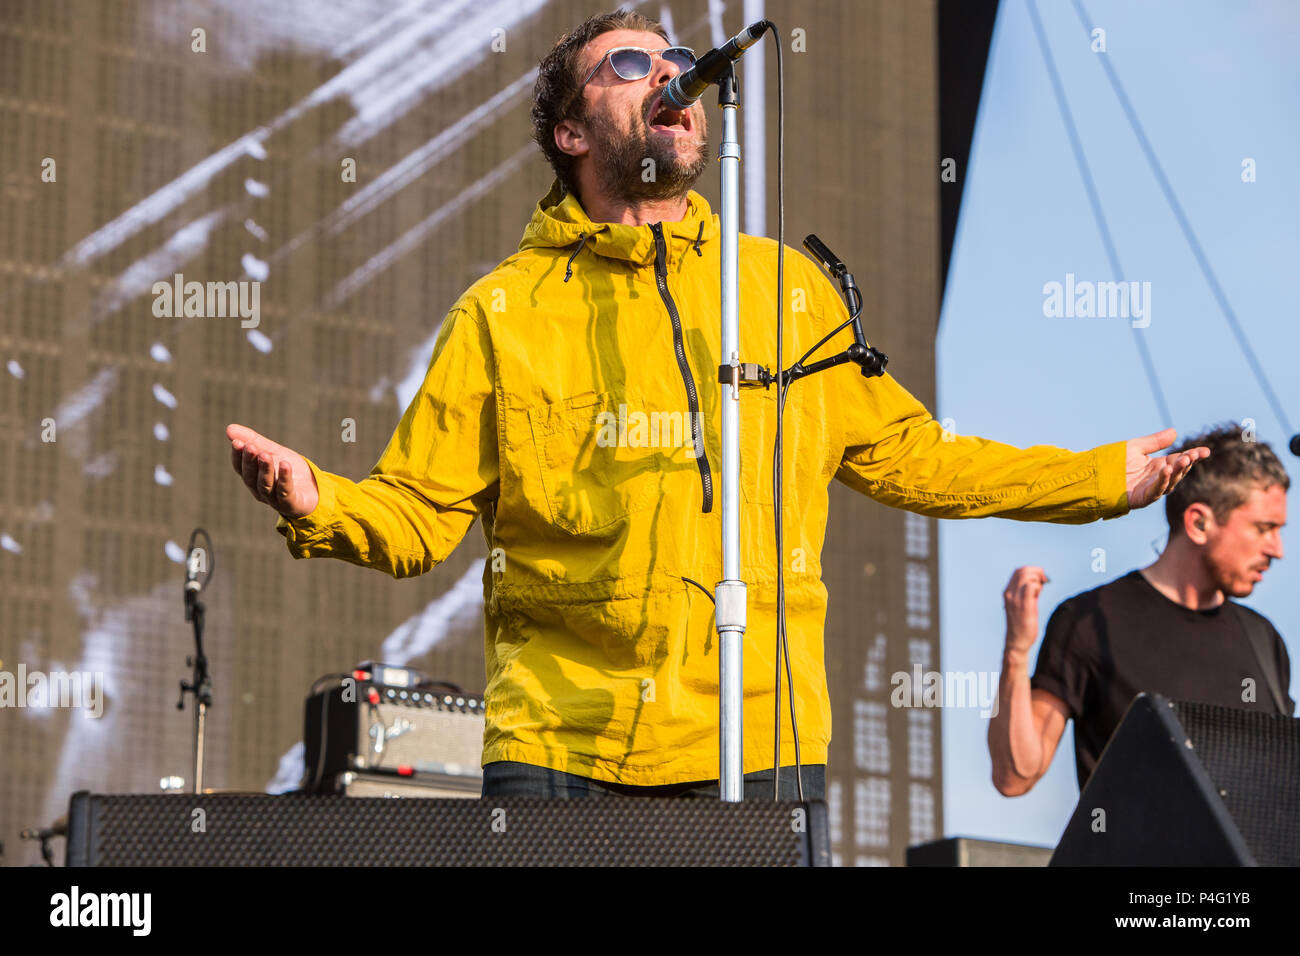 Milan Italie. 21 juin 2018. La chanteuse britannique Liam Gallagher effectue sur scène au Salon Expo Milano L'expérience au cours de la 'I-Days Festival 2018' Crédit : Rodolfo Sassano/Alamy Live News Banque D'Images